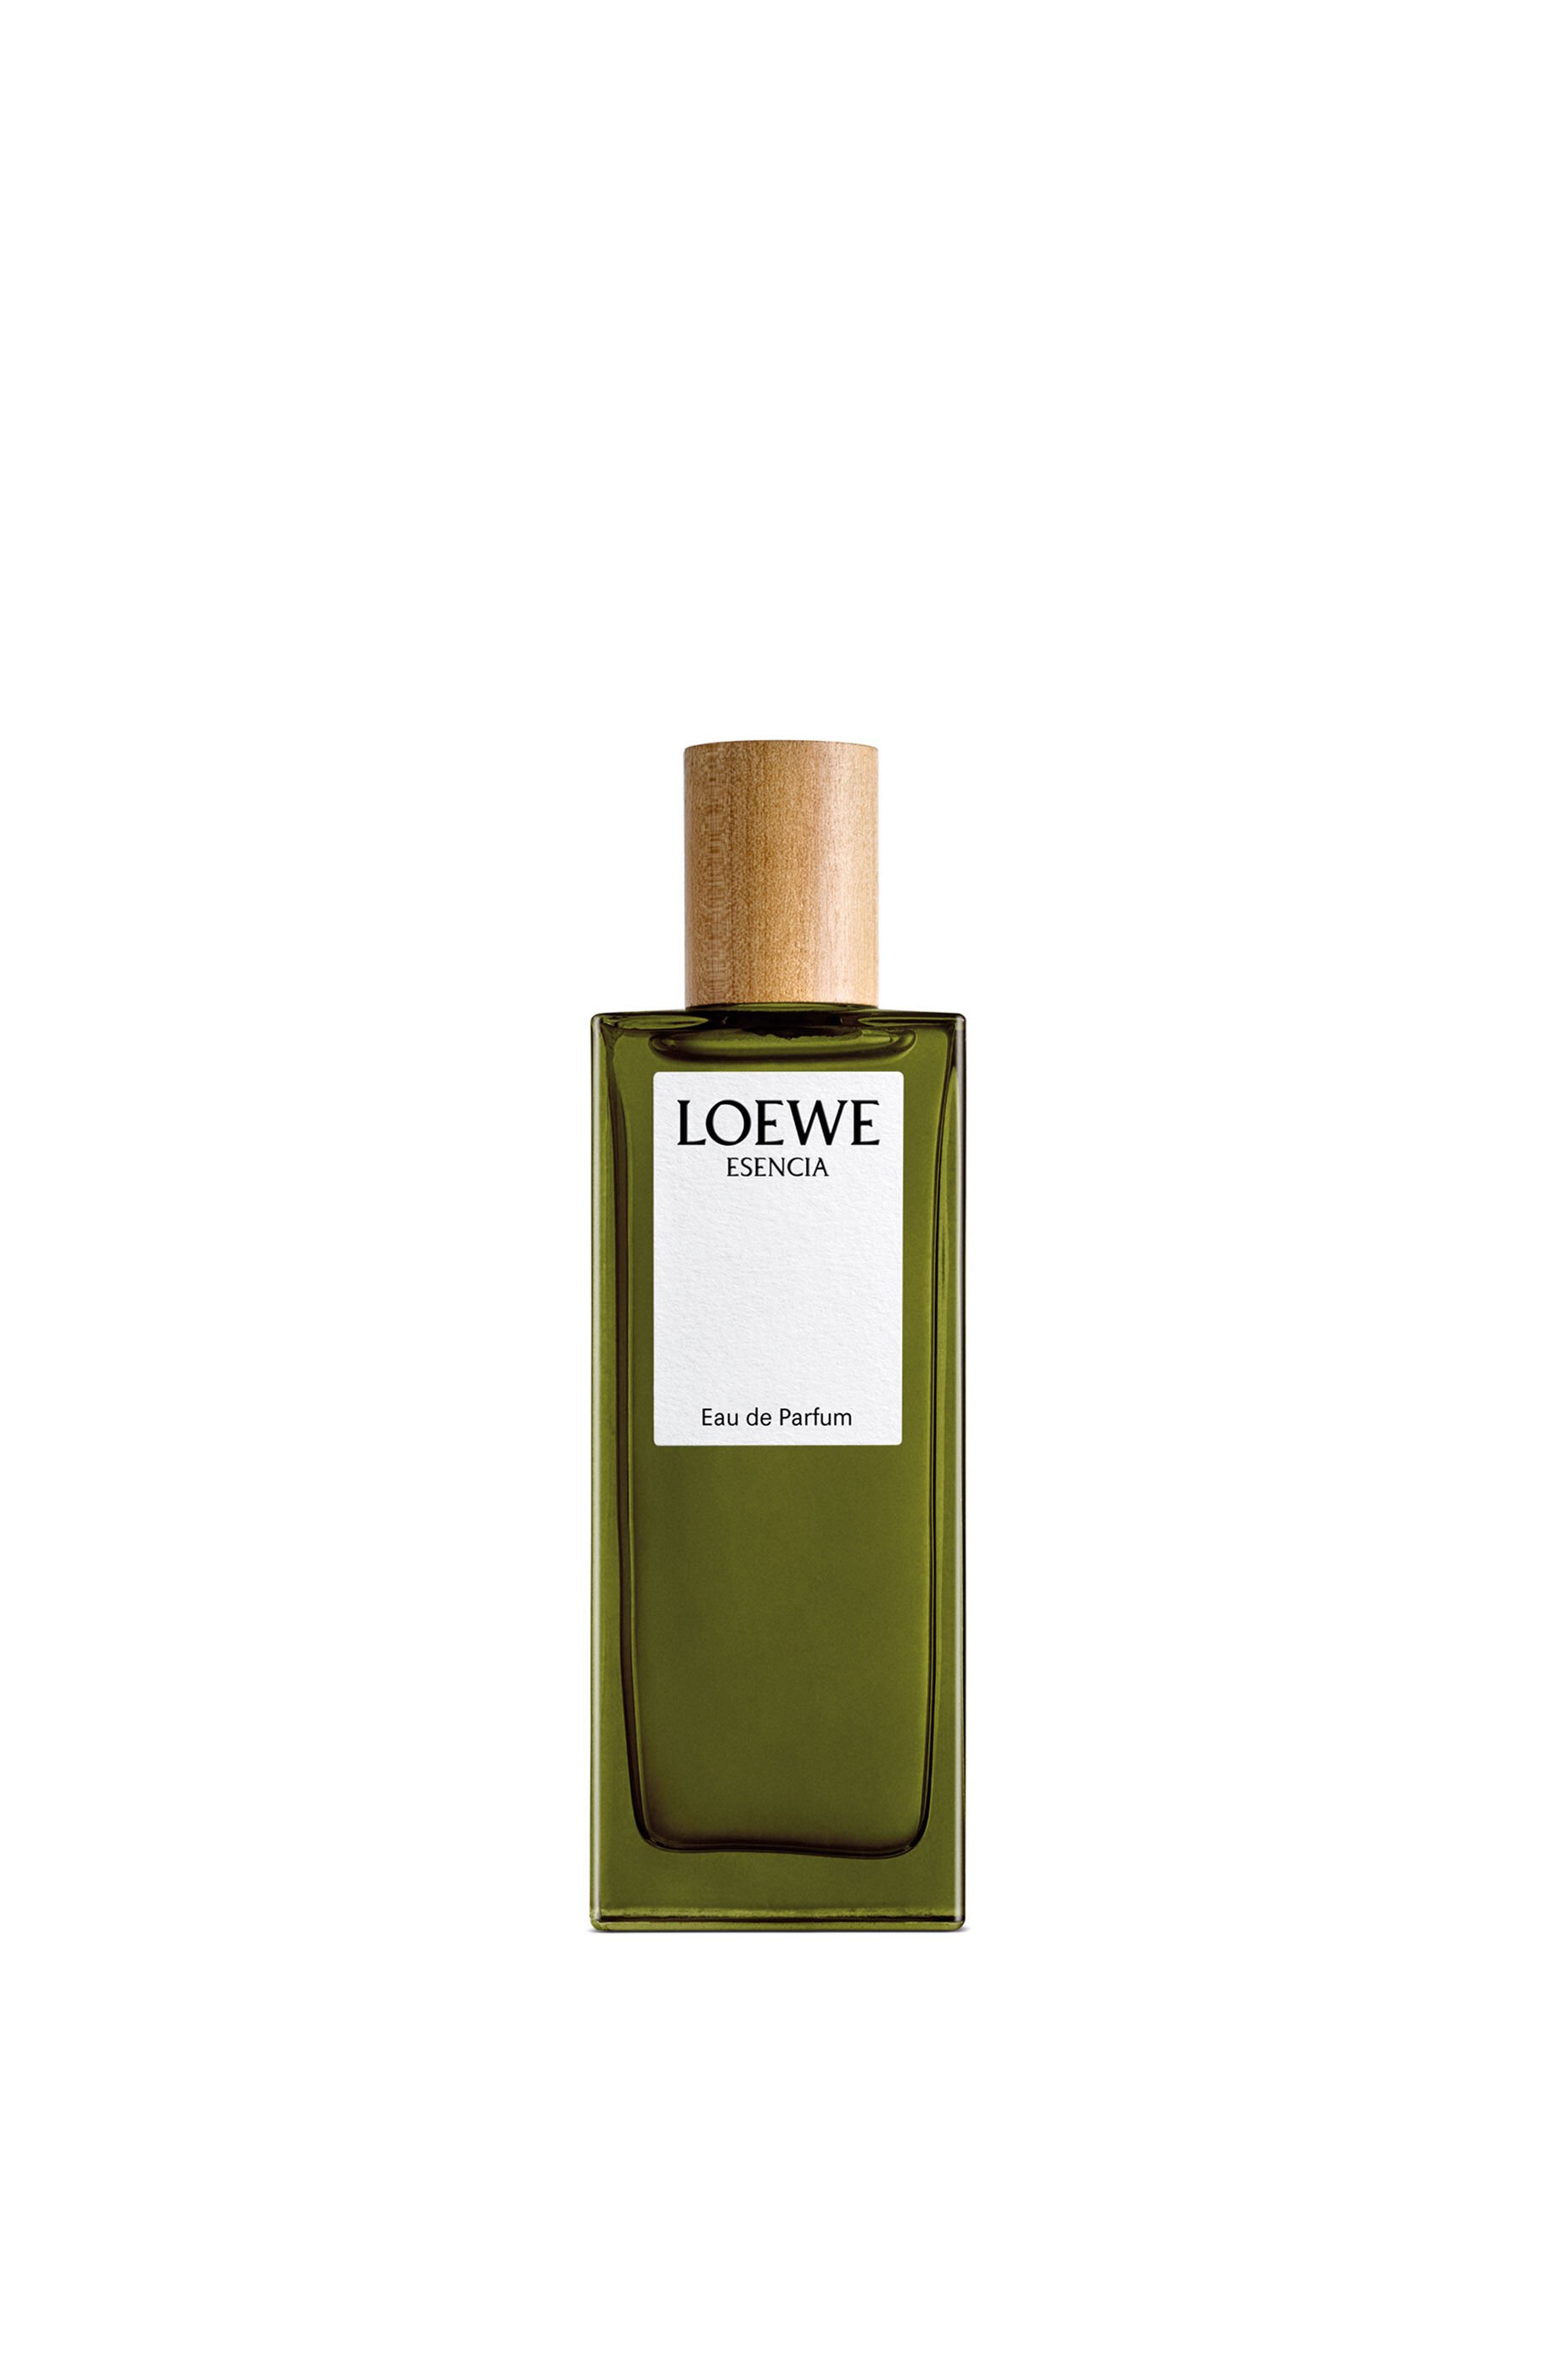 LOEWE 001 Man Eau de Parfum 100ml - LOEWE